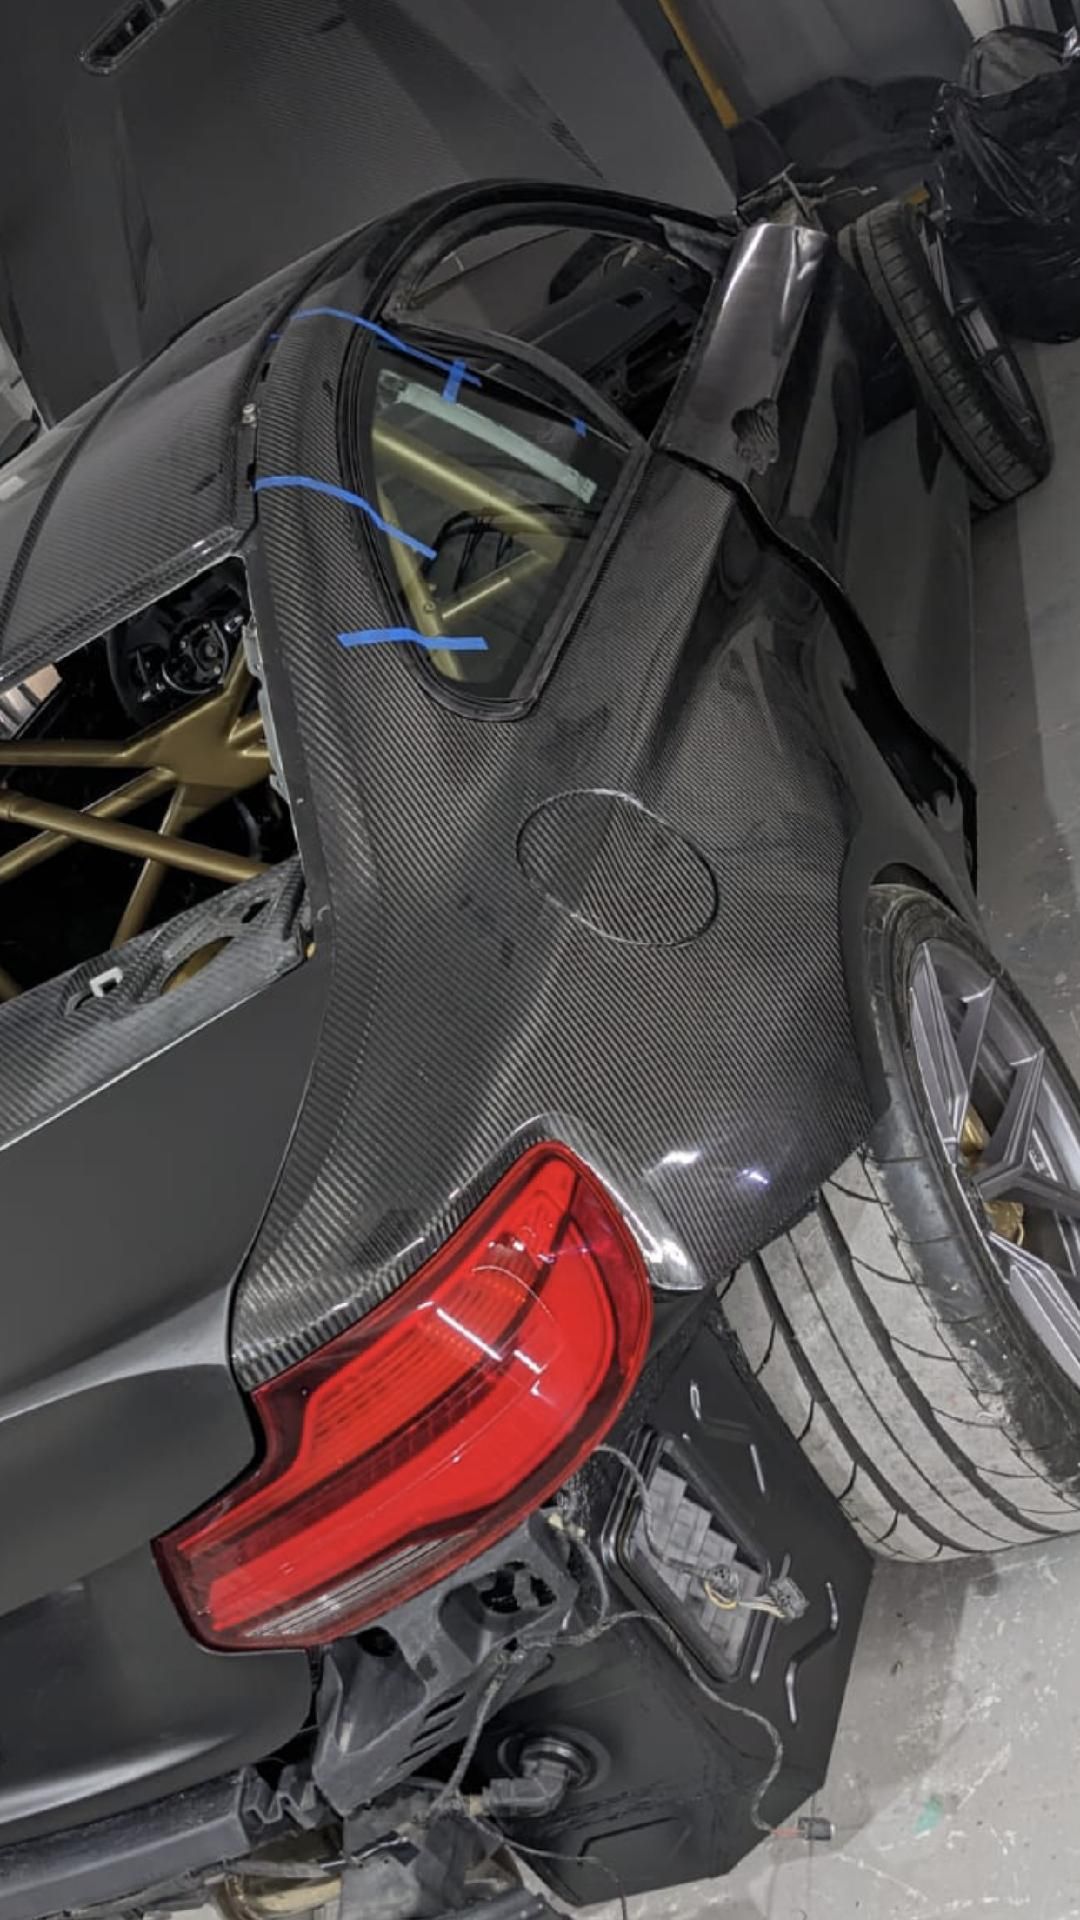 Painéis da carroceria em carbono do BMW M2 F87